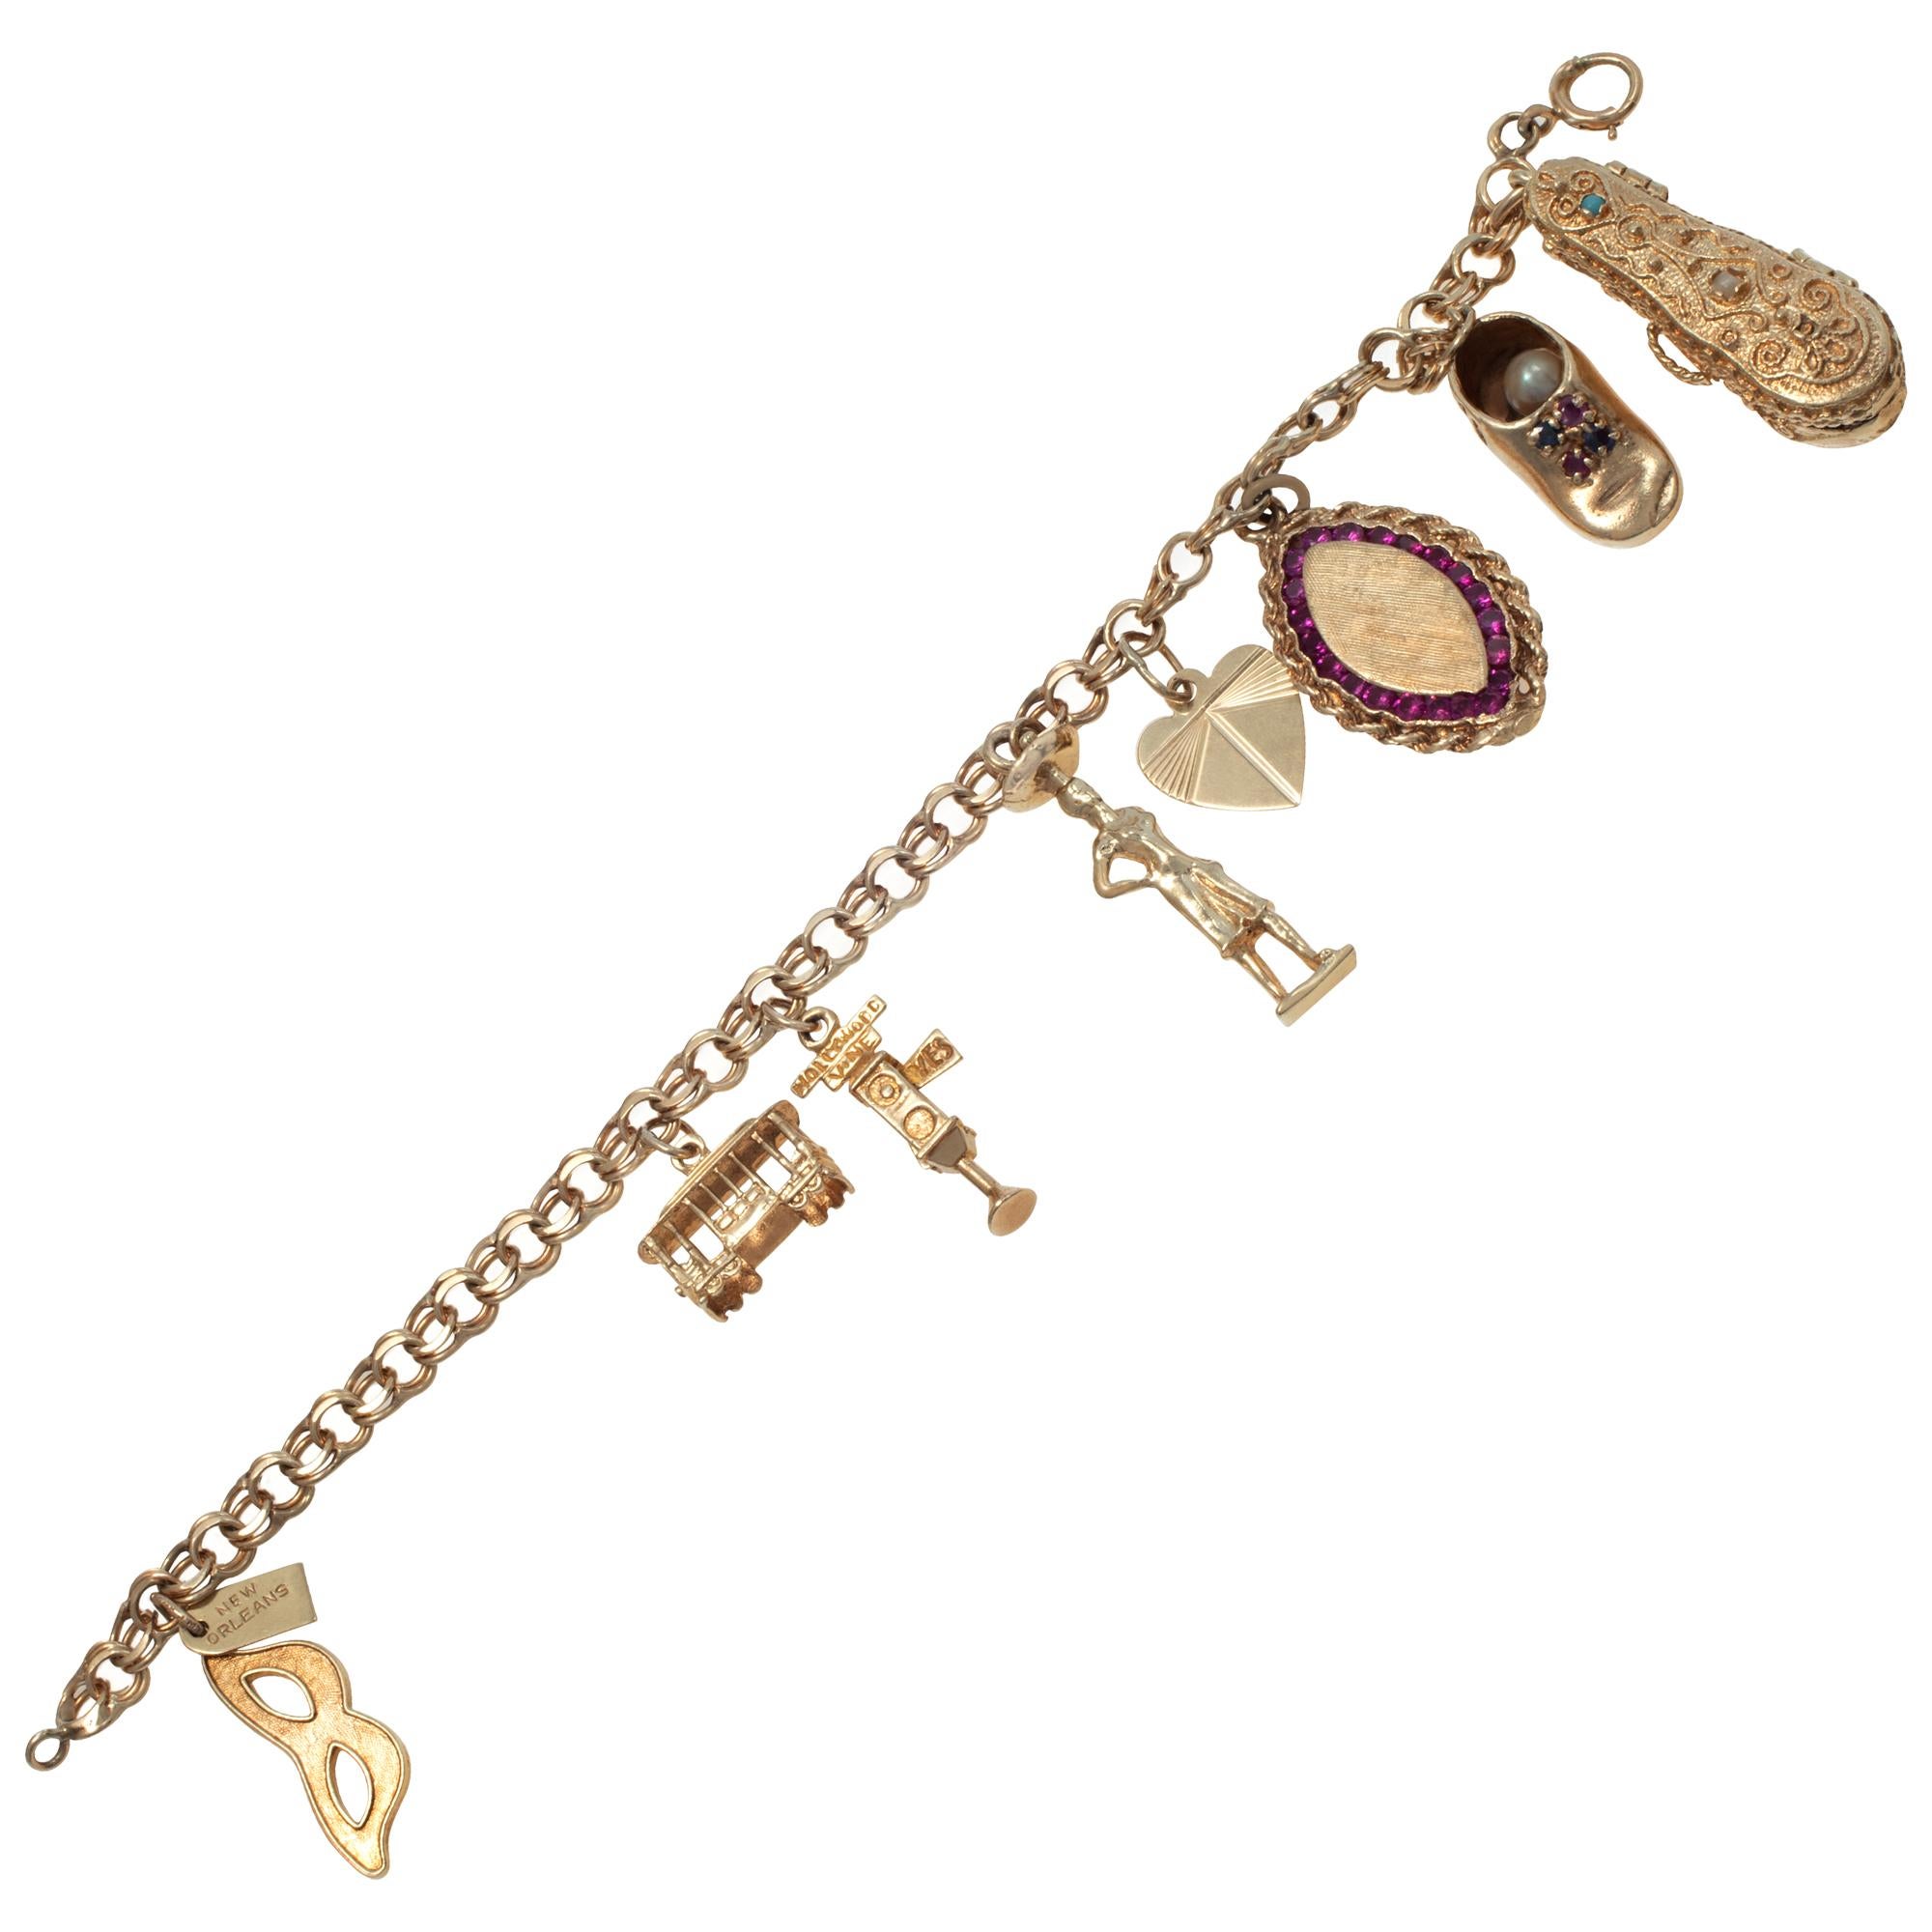 Vintage Charms Armband in 14k Gelbgold mit 8 einzigartigen Vintage Charms: a) Etruskische Geige mit Scharnier, die sich öffnen lässt, um eine detaillierte Mini-Geige im Inneren zu zeigen, 1,25 h x 3/8 (b), b) Maske mit 14K Kartusche gestempelt NEW